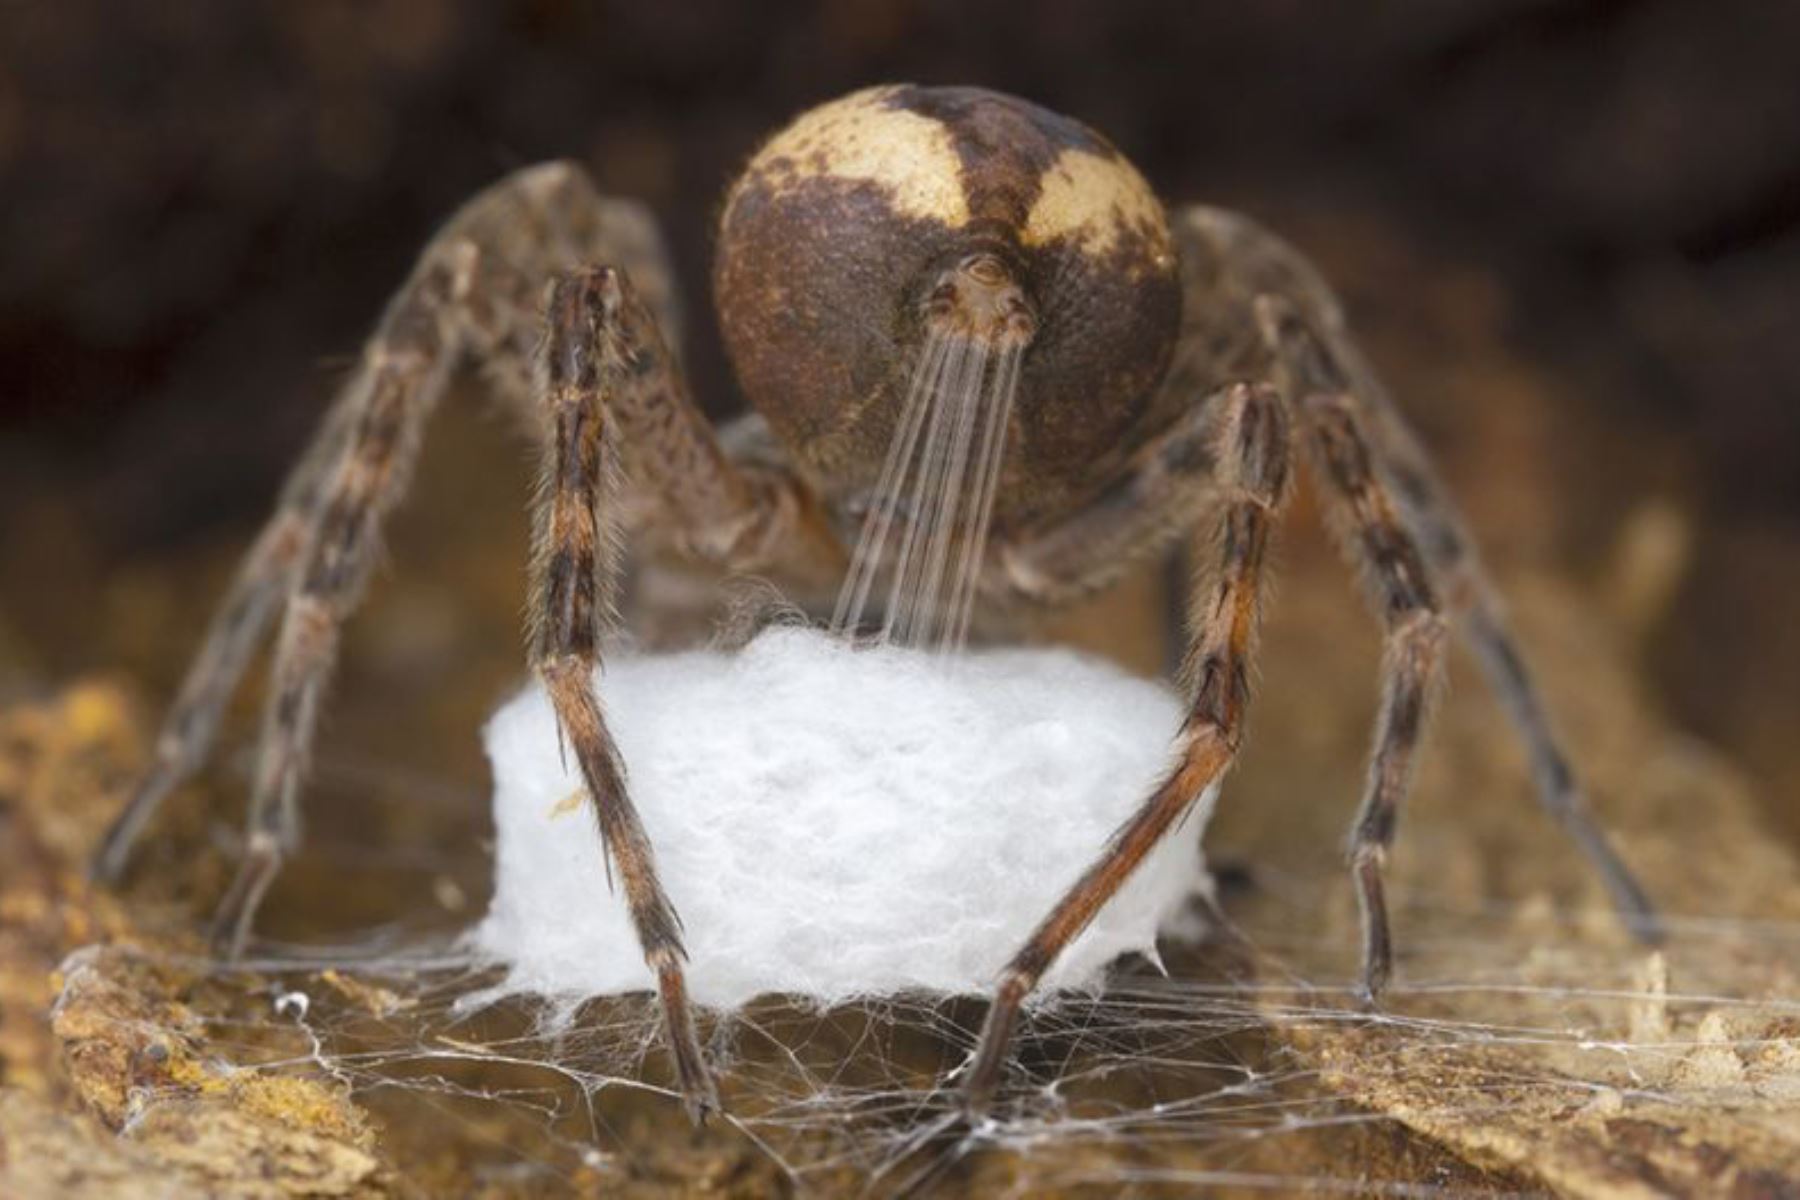 Gil Wizen es un entomólogo y fotógrafo experto. Esta araña dolomedes está tirando la seda de su hilador para formar un saco para sus huevos. Este tipo de araña es común en los humedales y bosques templados del este de América del Norte. La imagen ganó en la categoría Comportamiento: Invertebrados. Foto:GIL WIZEN/WPY